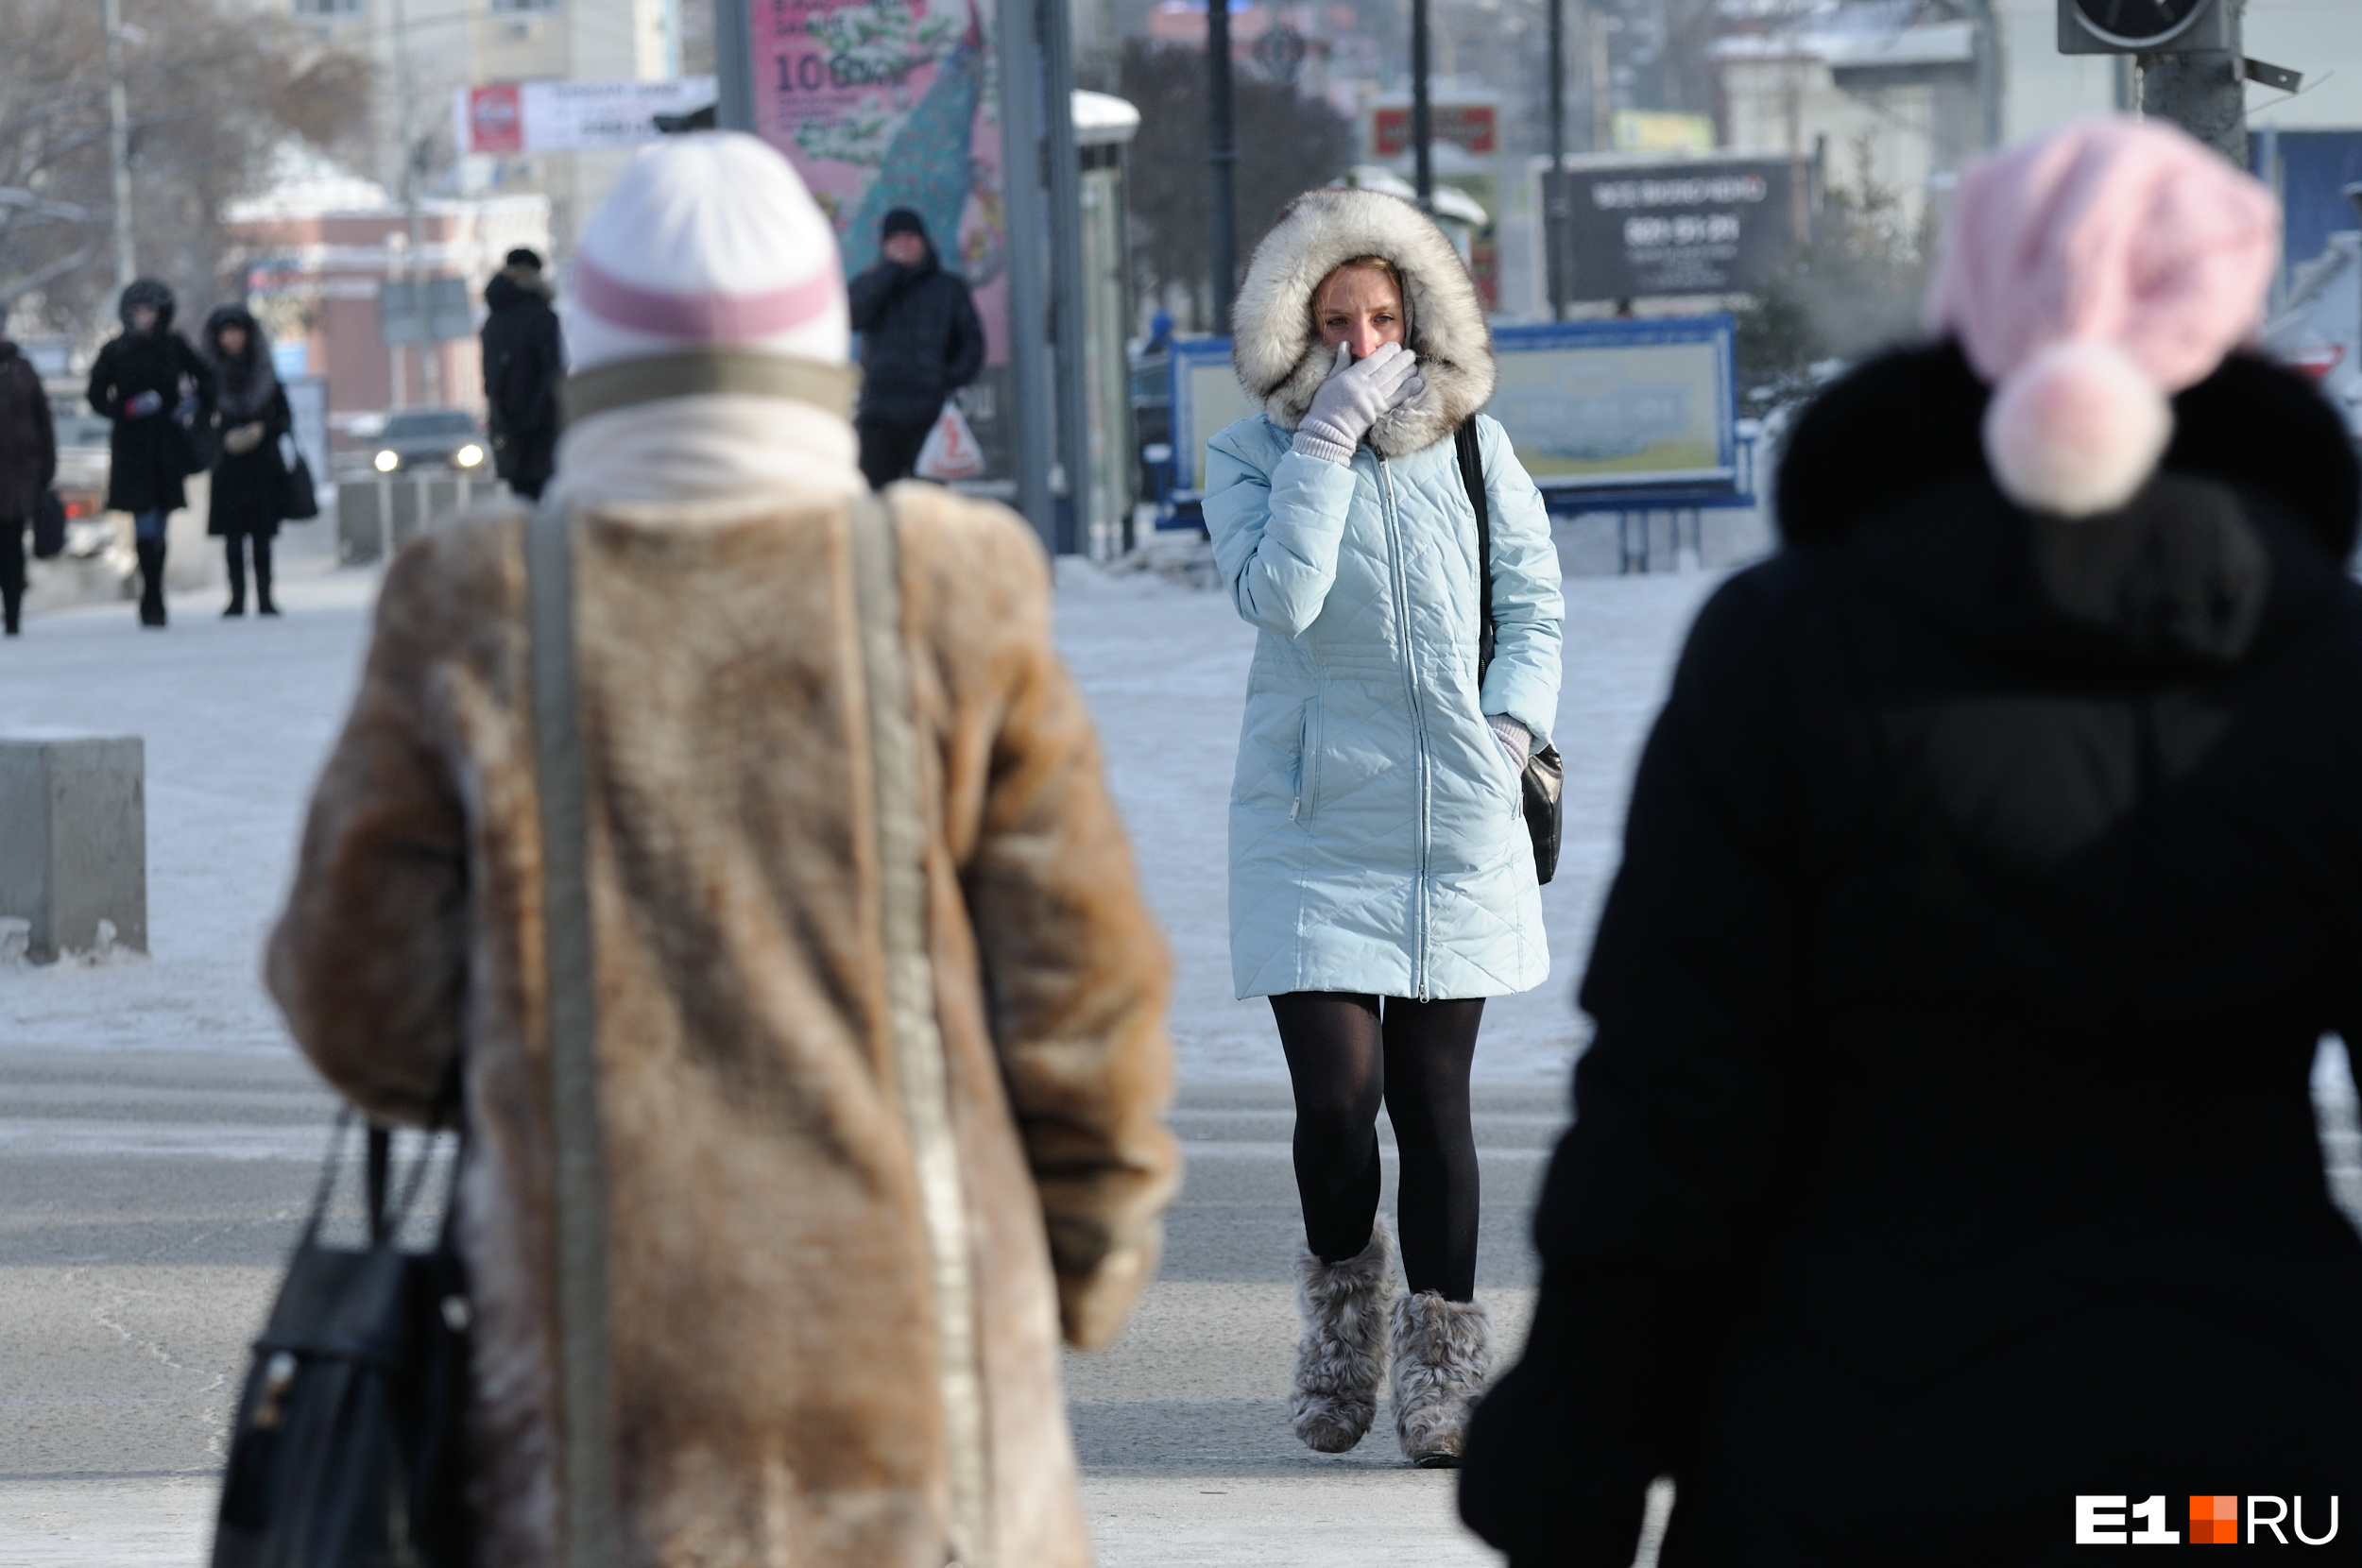 Лютые морозы продолжаются! Синоптики выпустили экстренное предупреждение об аномальных холодах на Урале